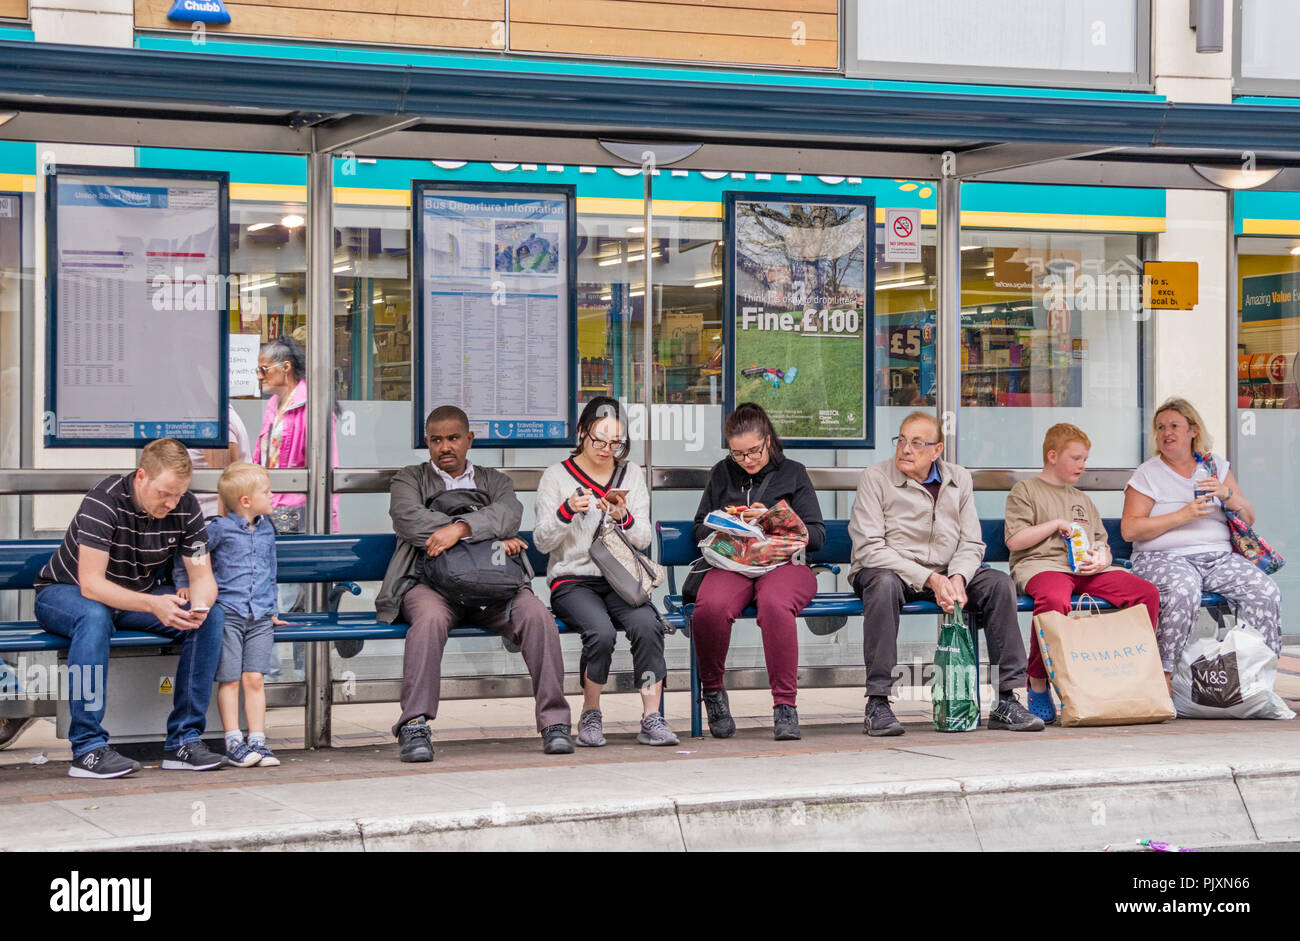 Personnes en attente d'un bus, Bristol, England, UK Banque D'Images